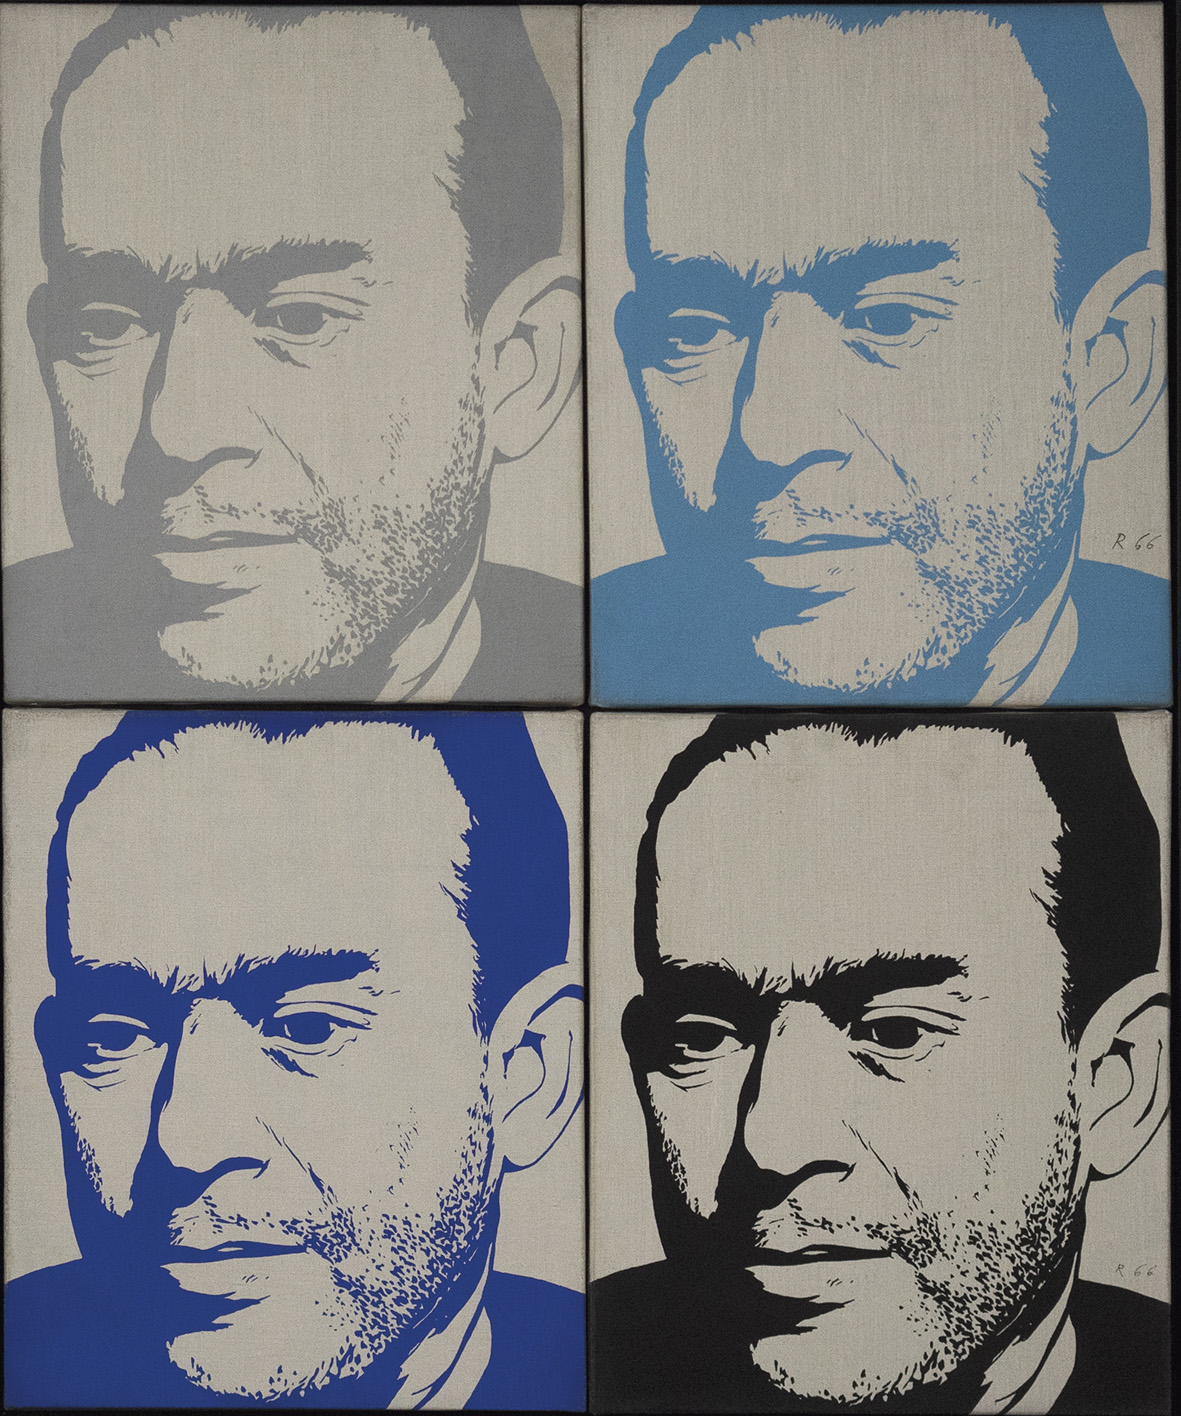 Bernard Rancillac, Ben Barka Present/Absent, 1966, sérigraphie sur toile, 92,6 x 76,4 x 1,8 cm, don de Liliane et Michel Durand-Dessert, 2